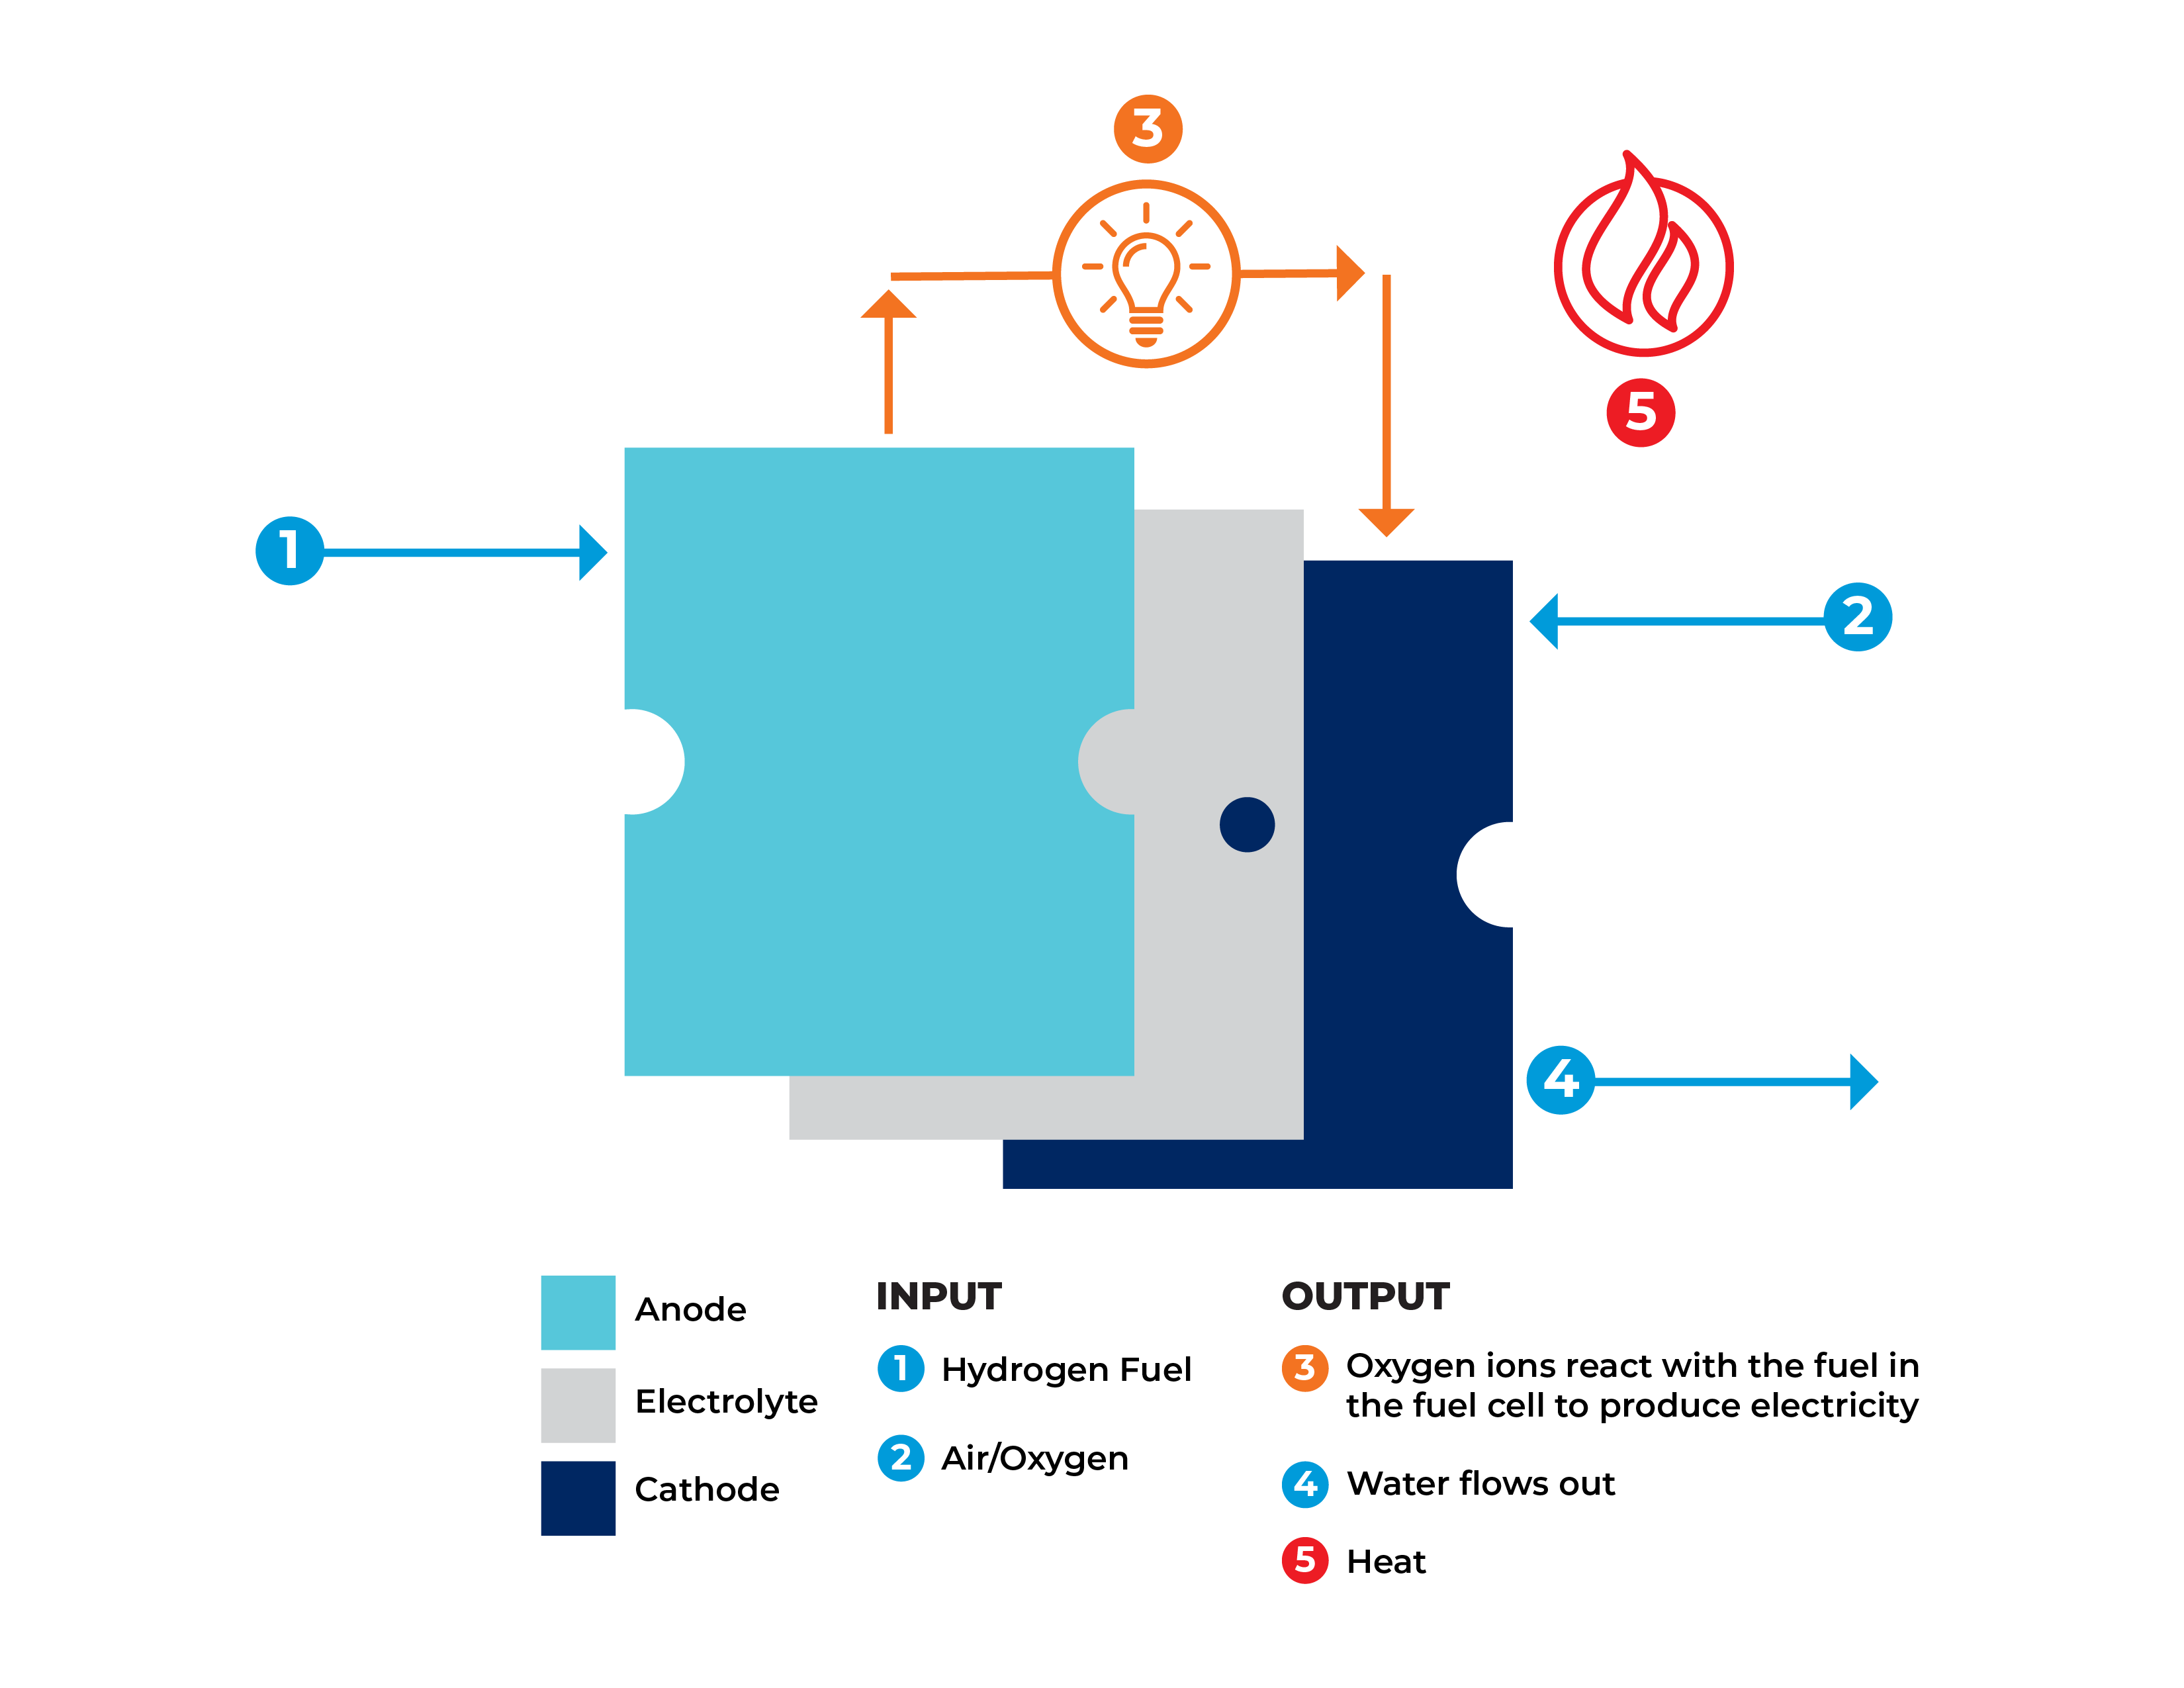 fuel-cell-diagram